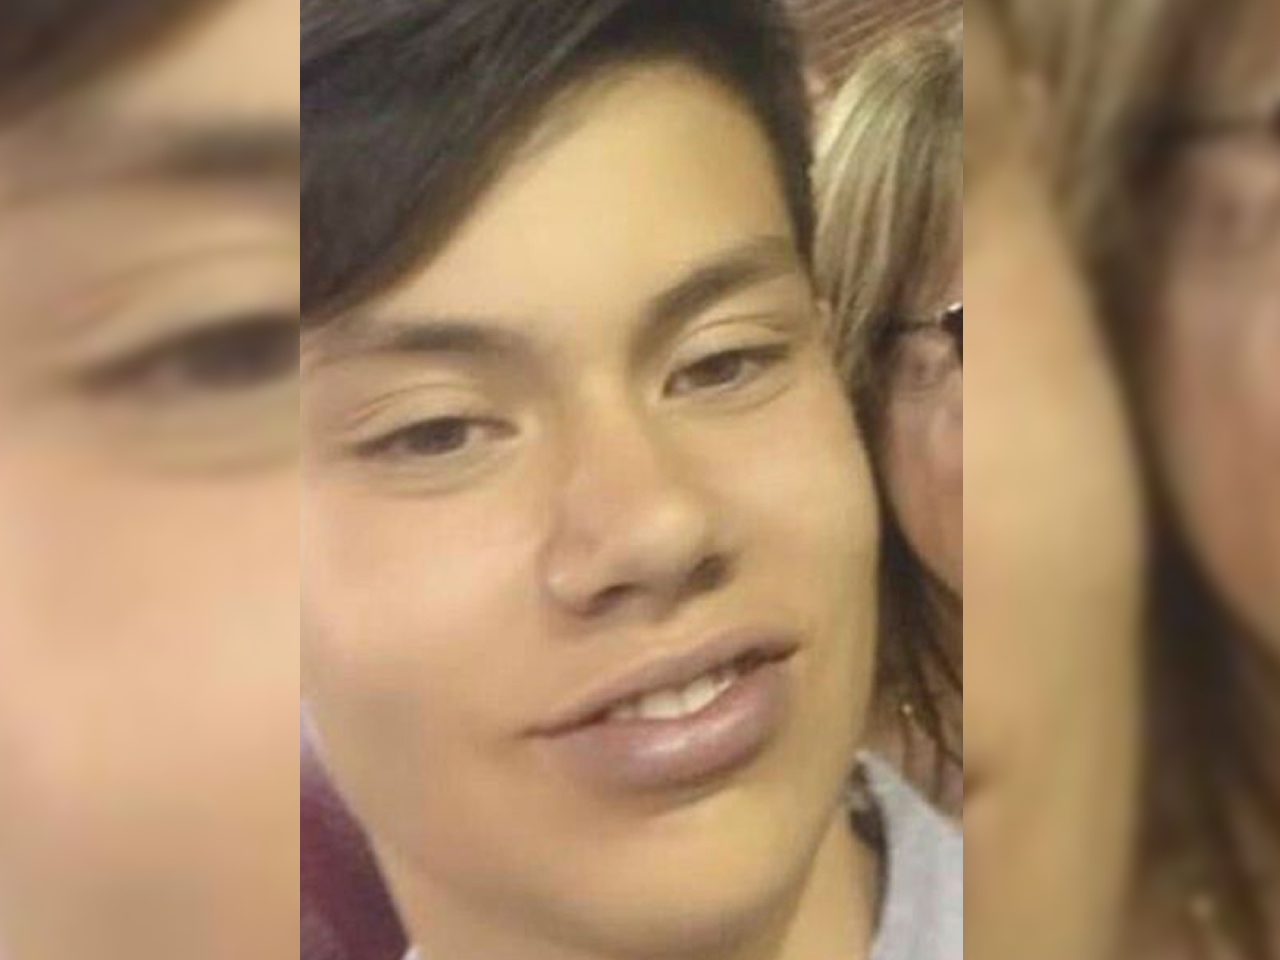 SAN FELIPE: Estudiante de 15 años muere apuñalado en el corazón por otro adolescente de 14 años